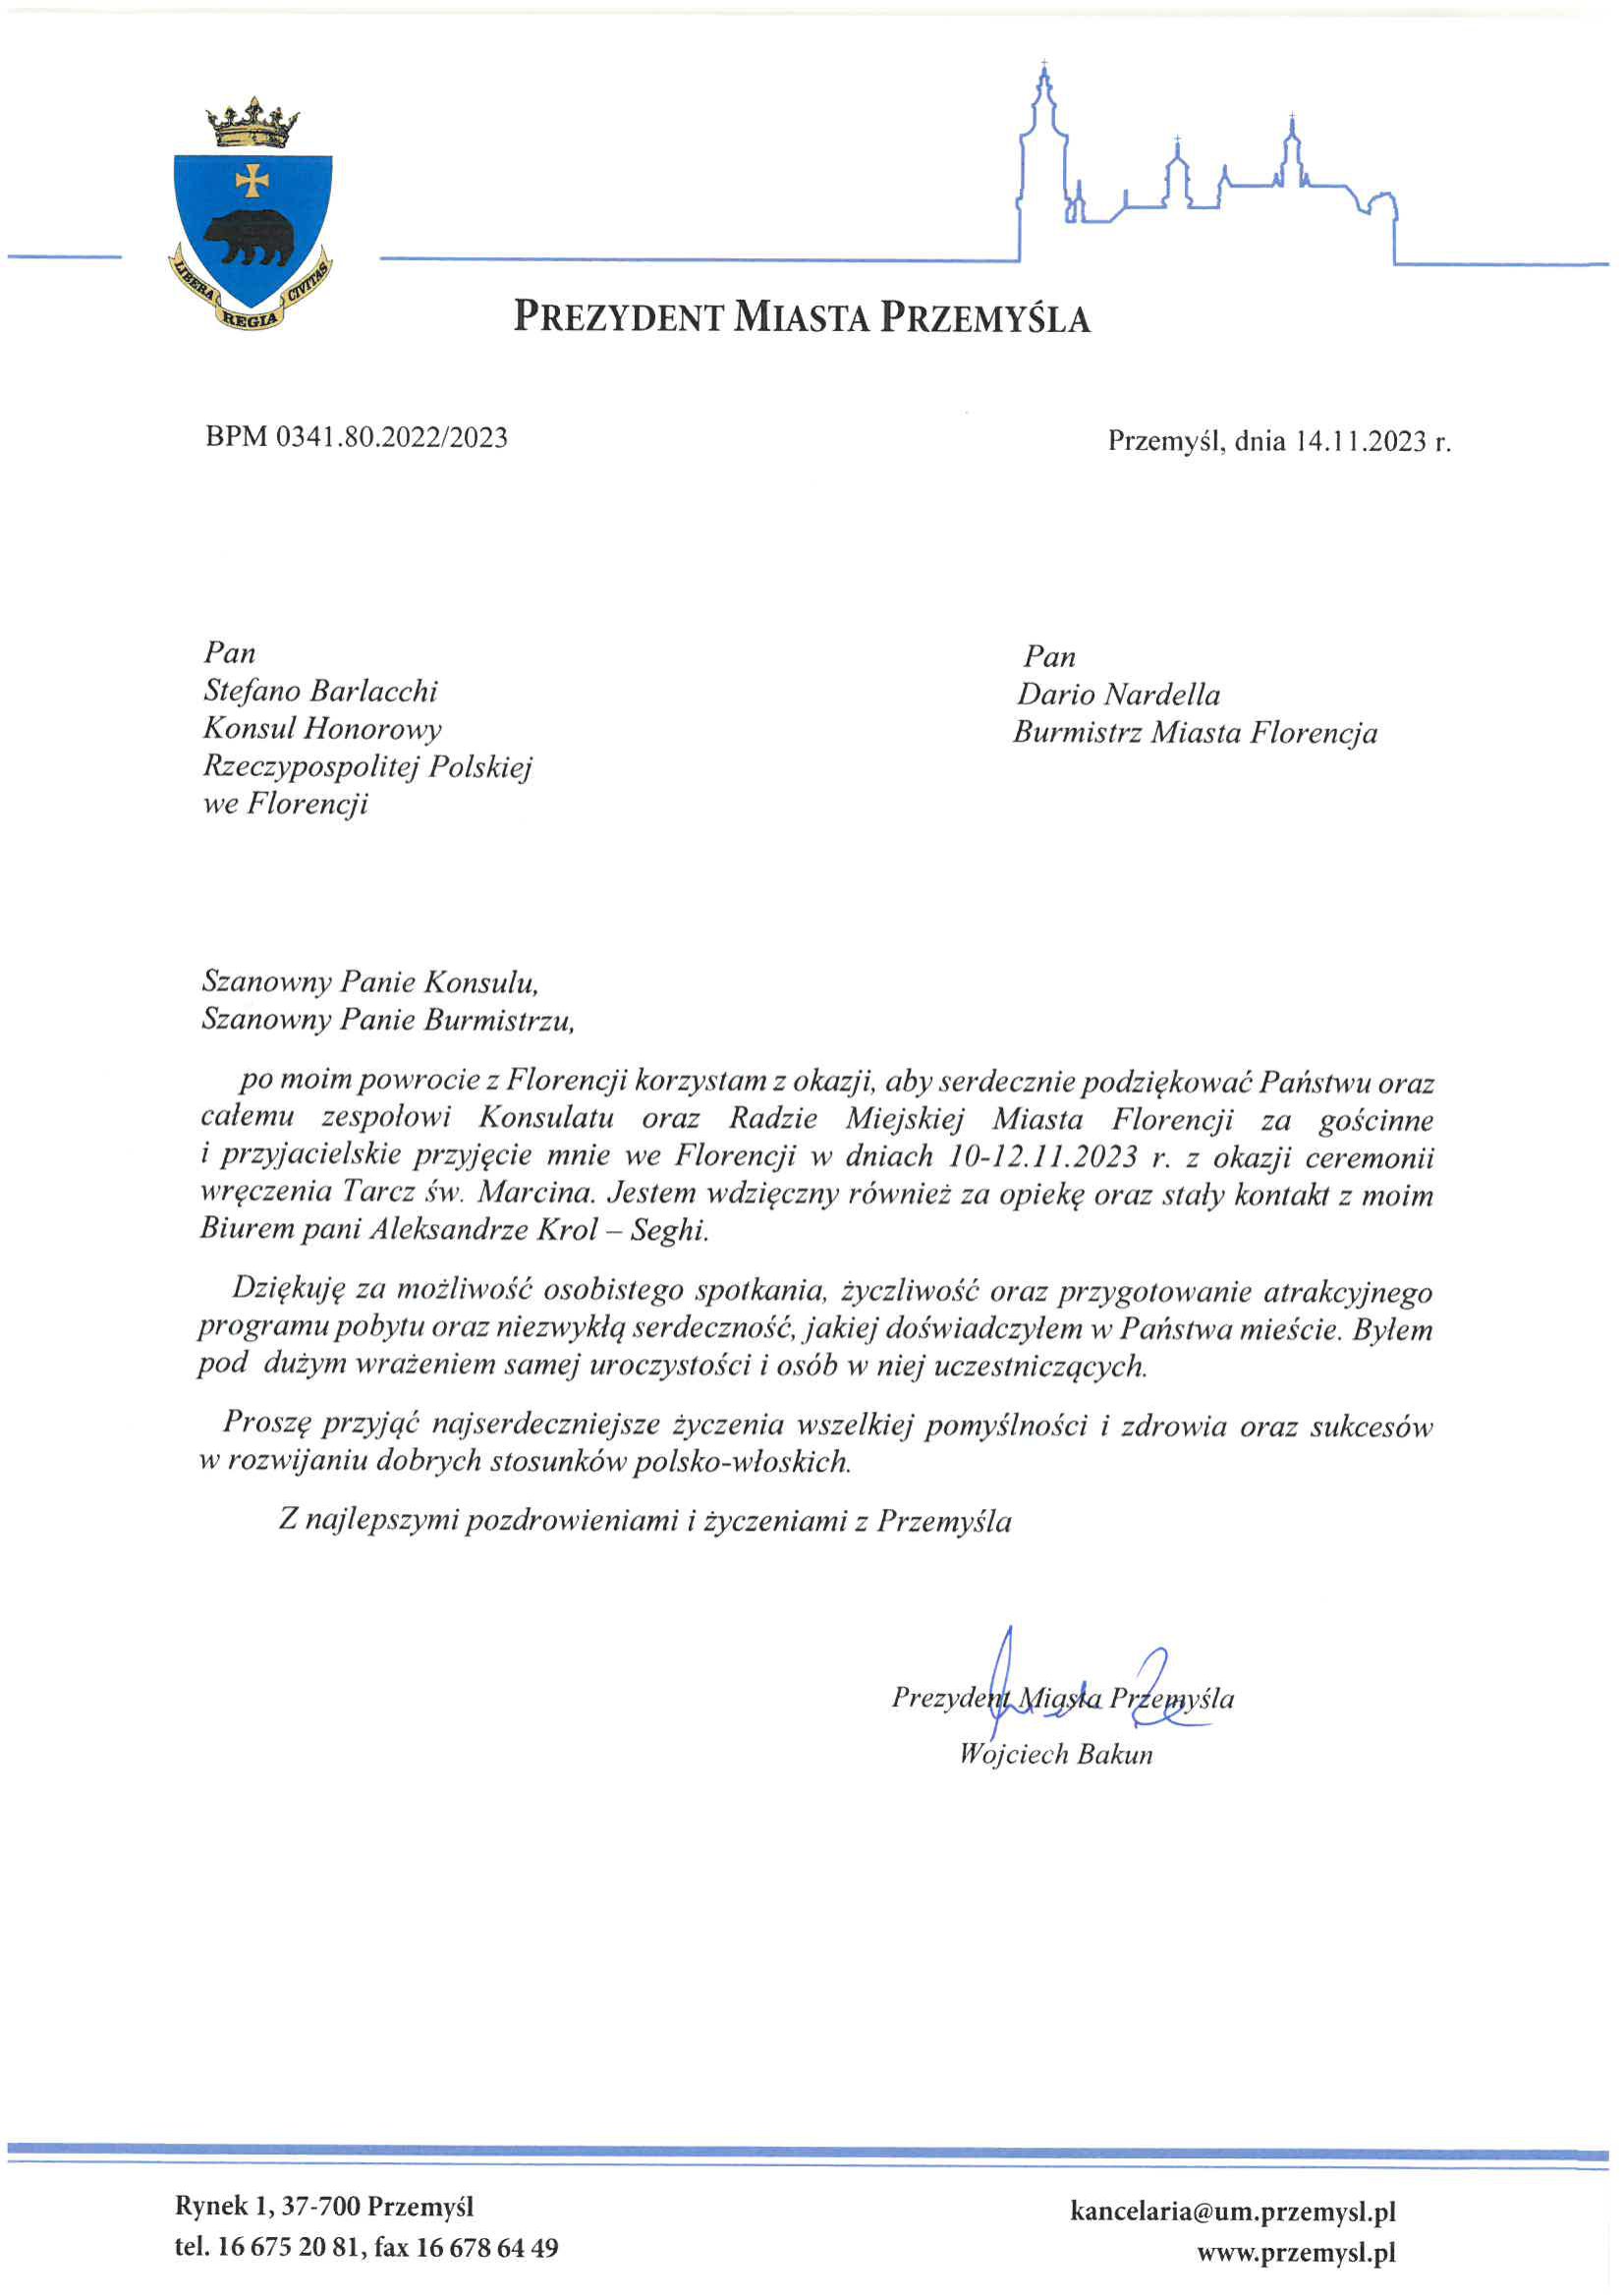 La lettera di ringraziamento dal Presidente di Przemysl Wojciech Bakun